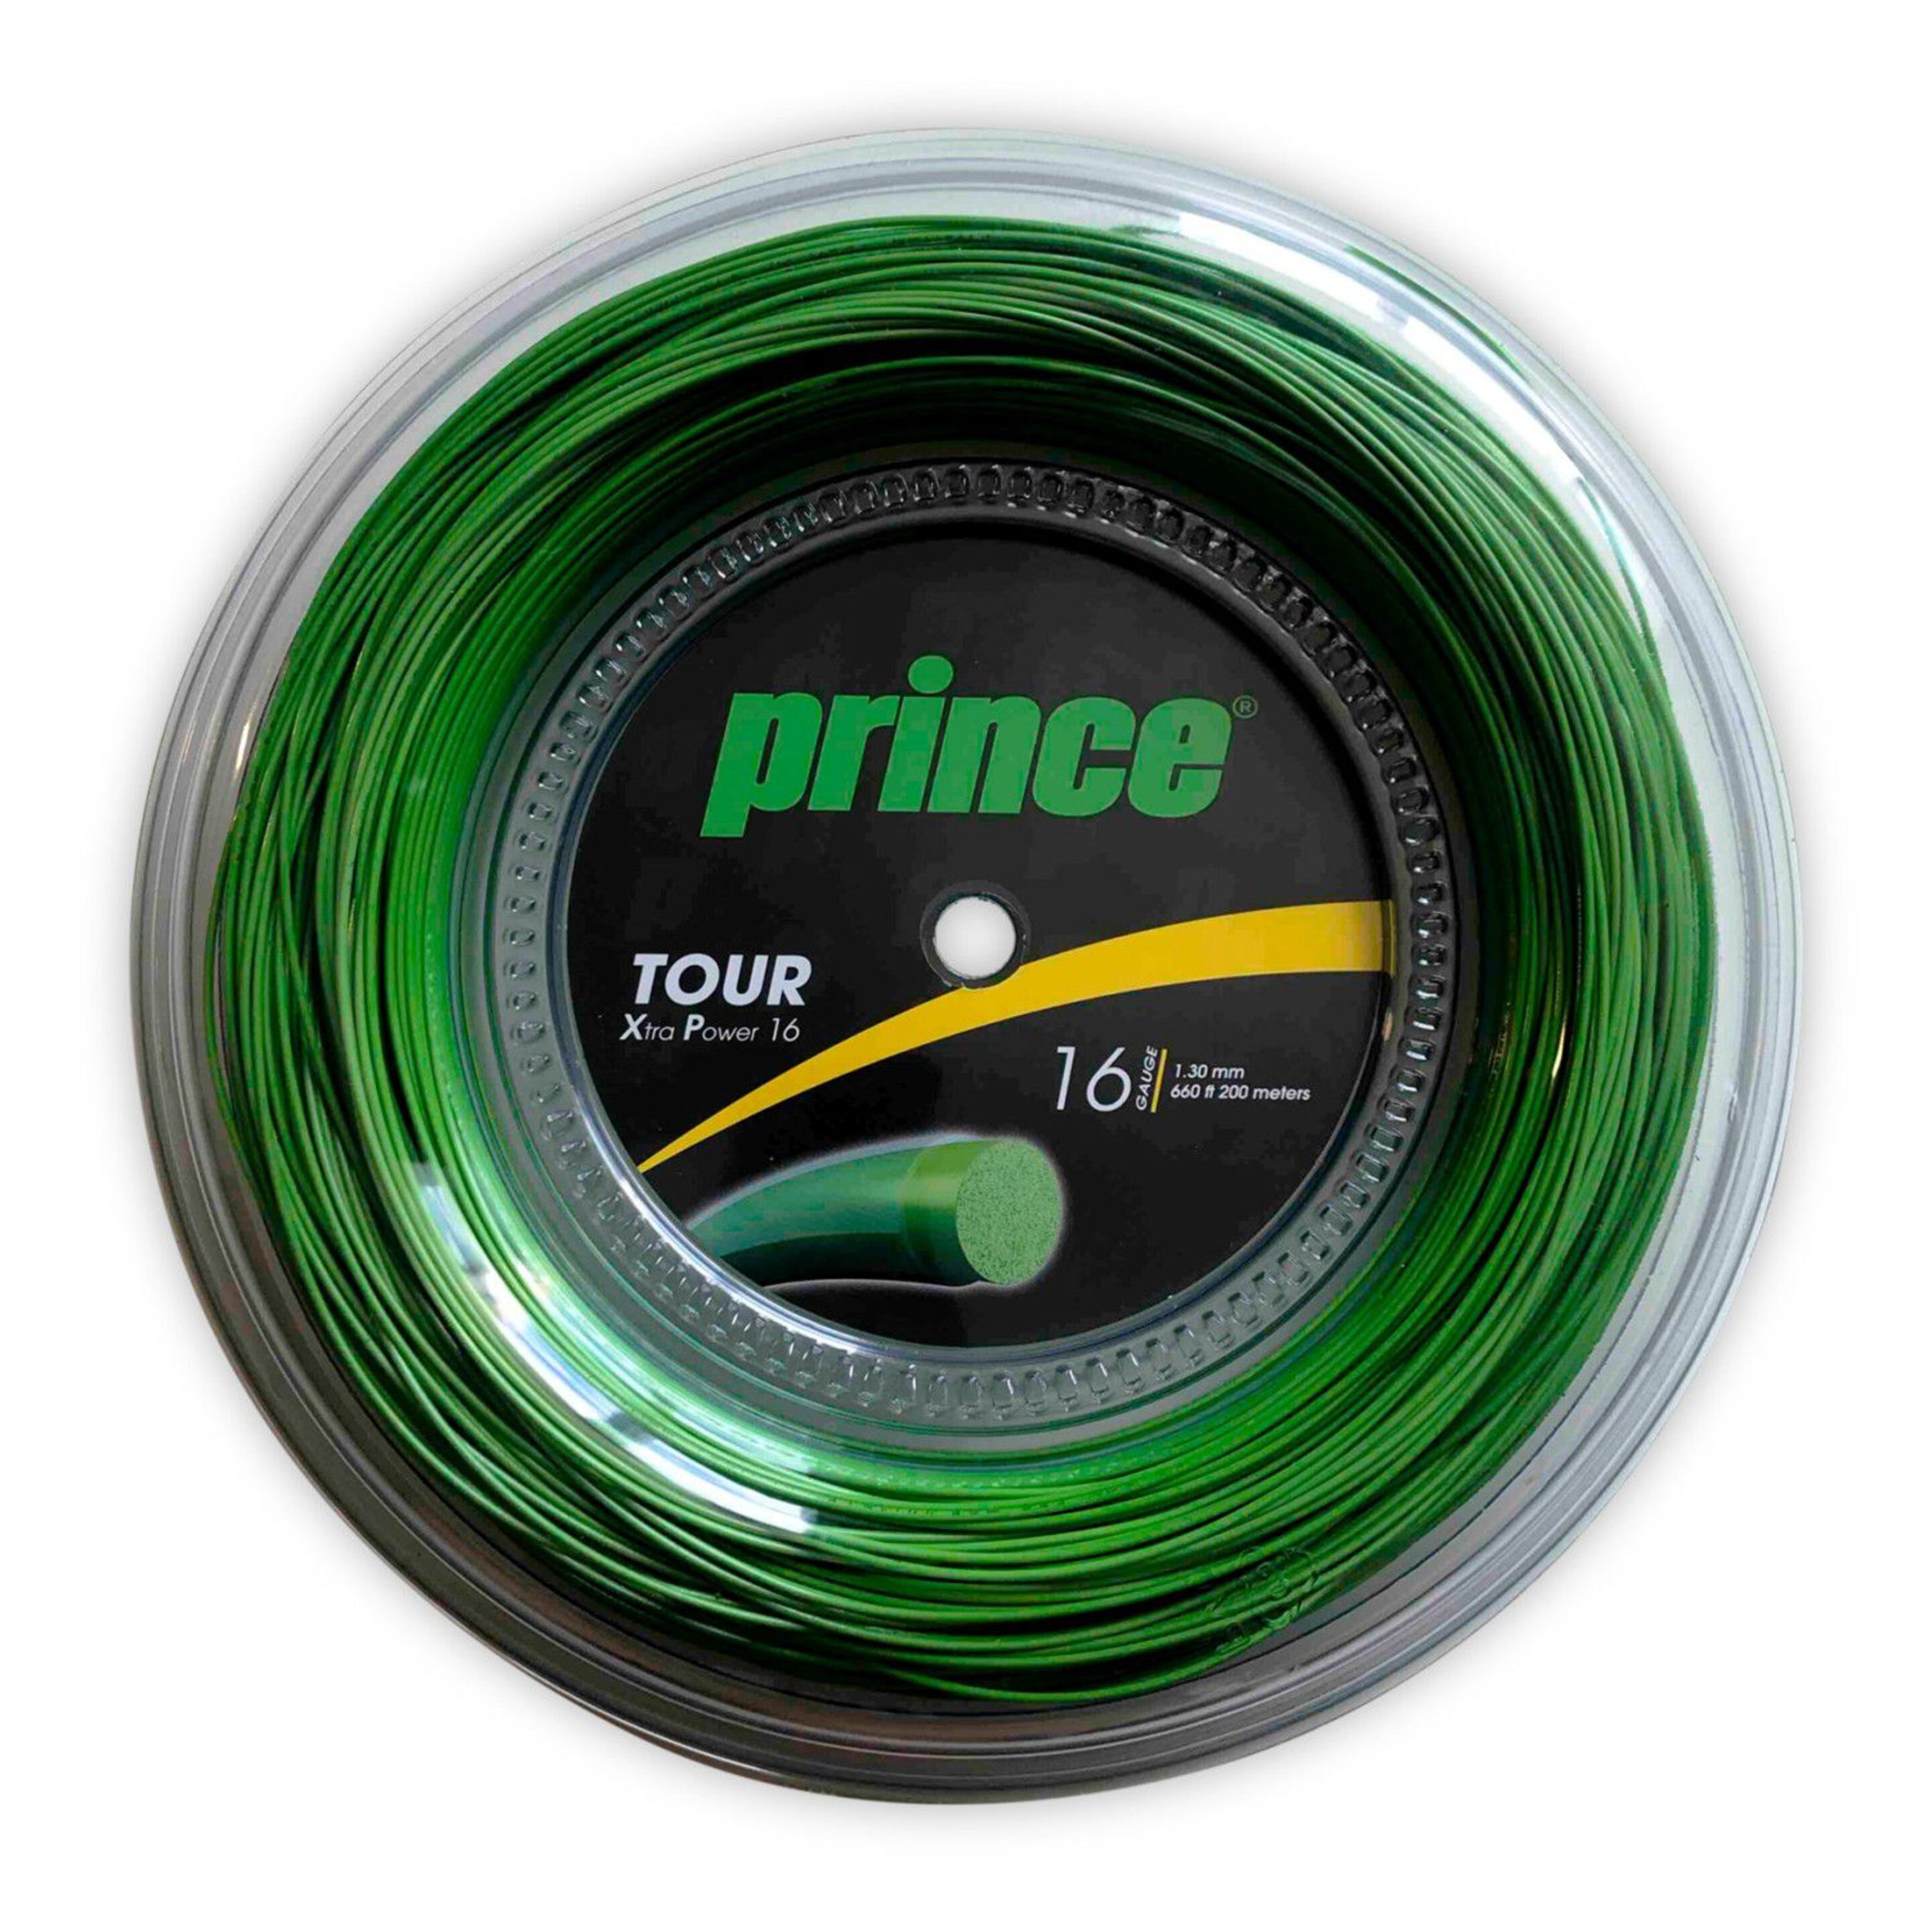 Cordaje De Tenis Prince Tour Xp 16 (1.30 Mm) (200m) - verde - 